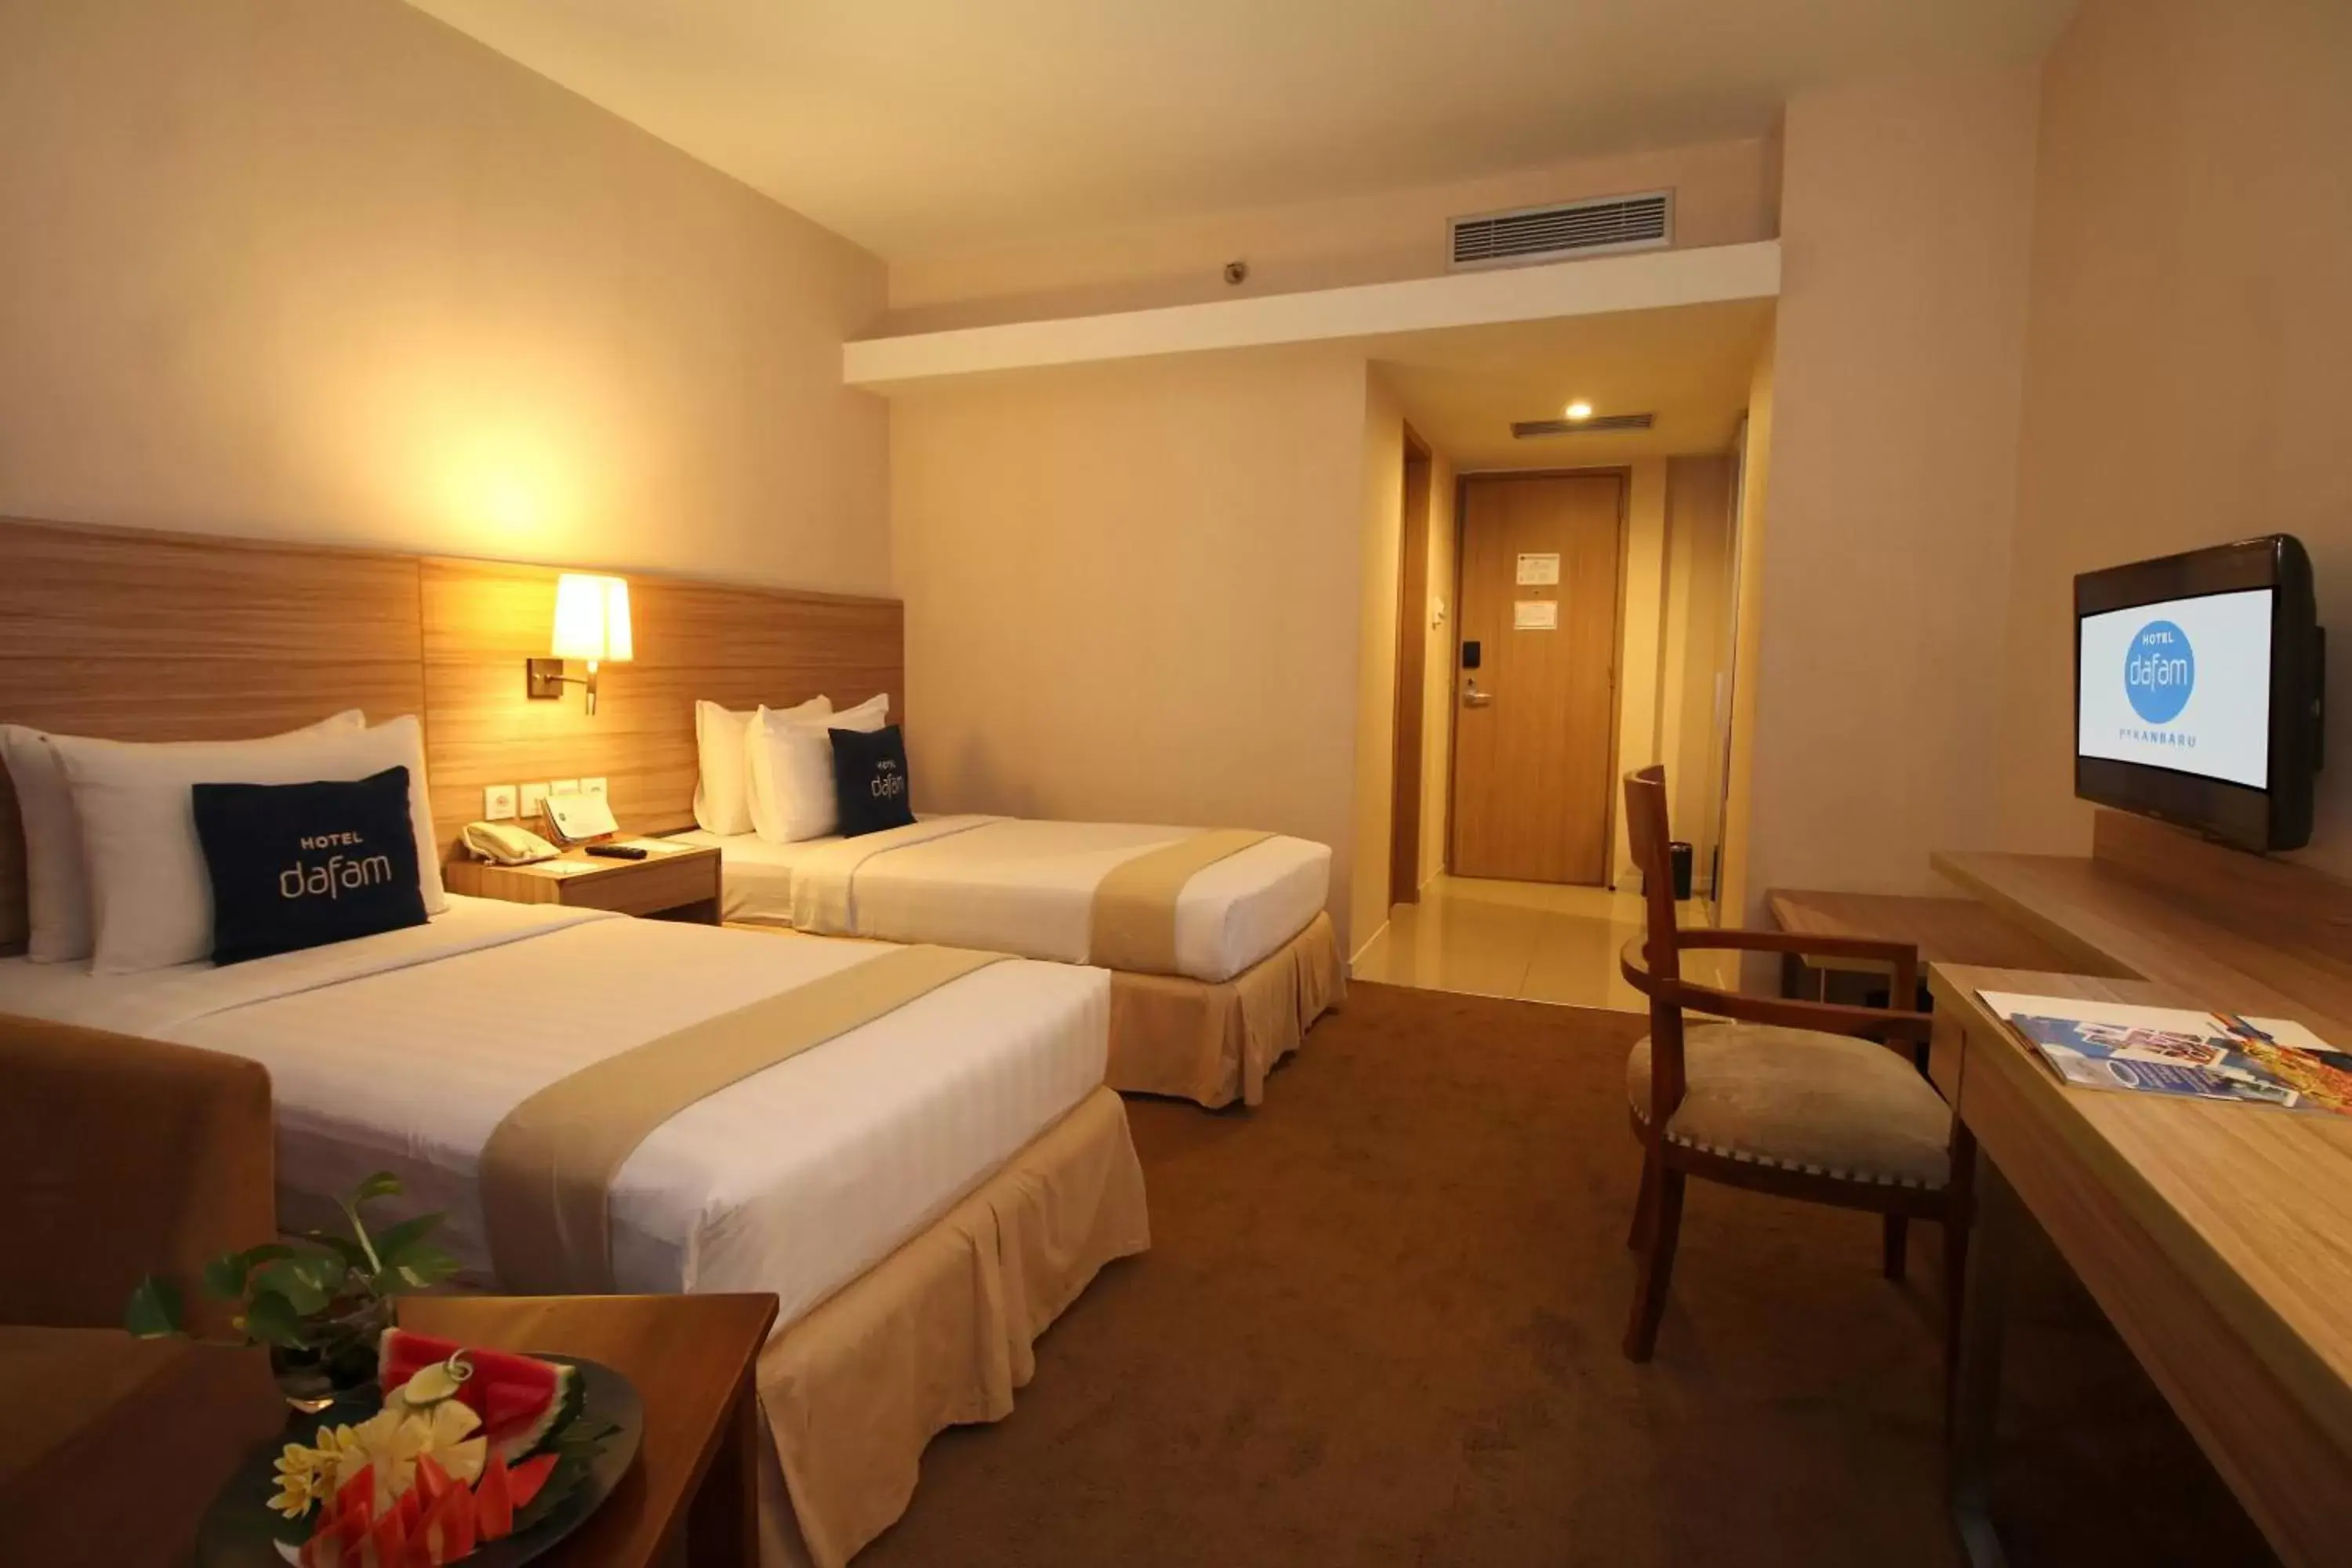 Bed in Hotel Dafam Pekanbaru